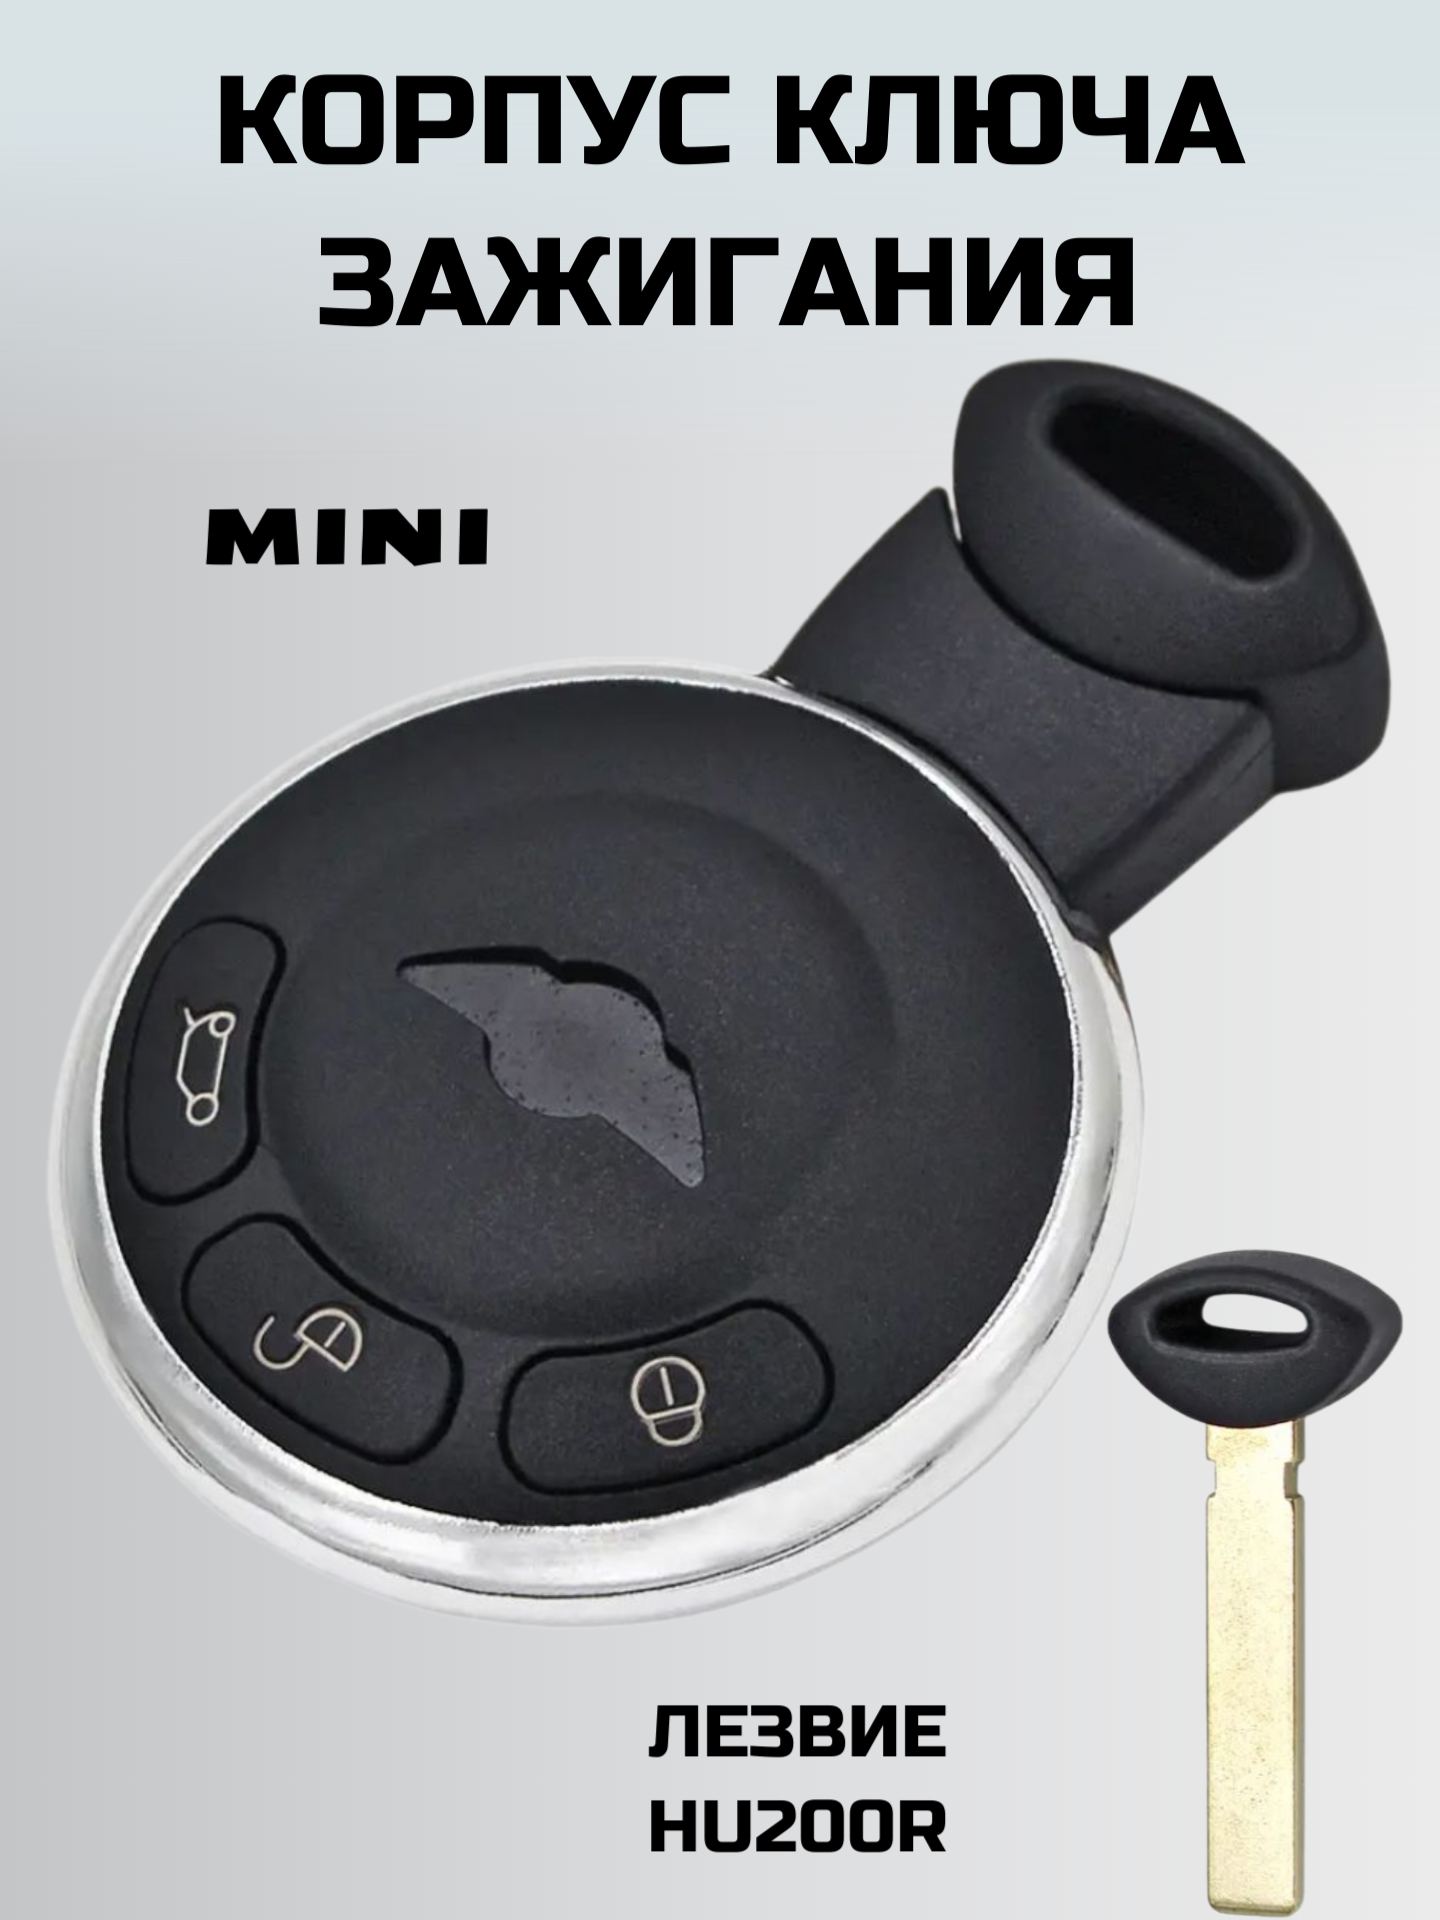 Ключ зажигания мини купер. смарт ключ. корпус ключа MINI